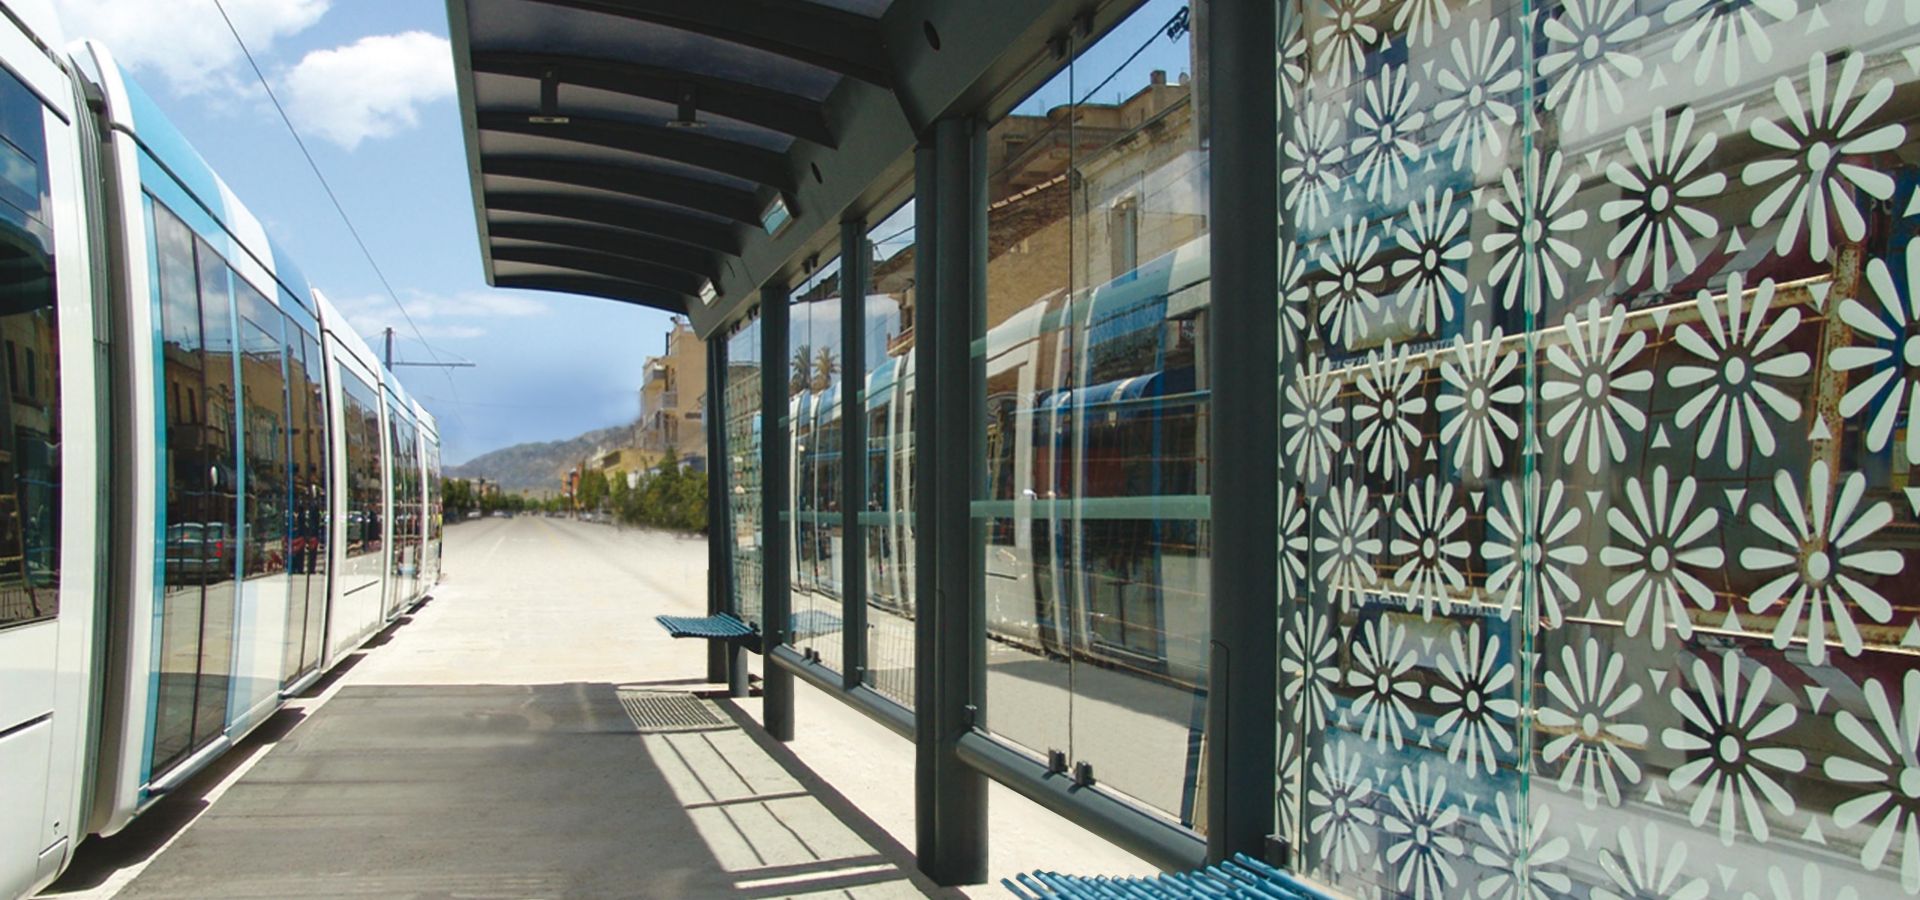 METALCO Fabricant d'abris voyageurs spécifiques, stations tramway, lignes BHNS, mobilier de quai